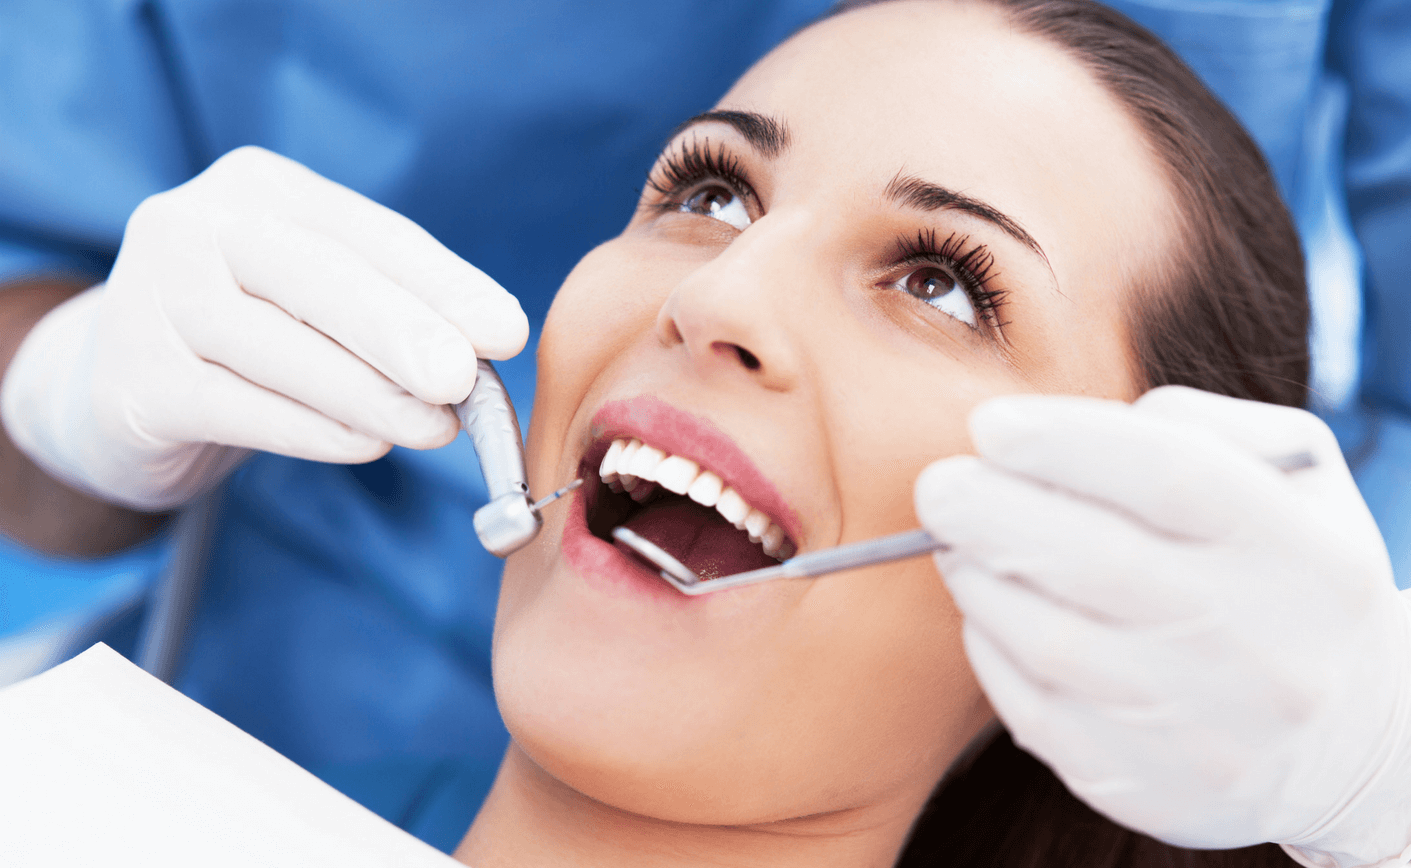 Dental hygiene checkup in Maidstone